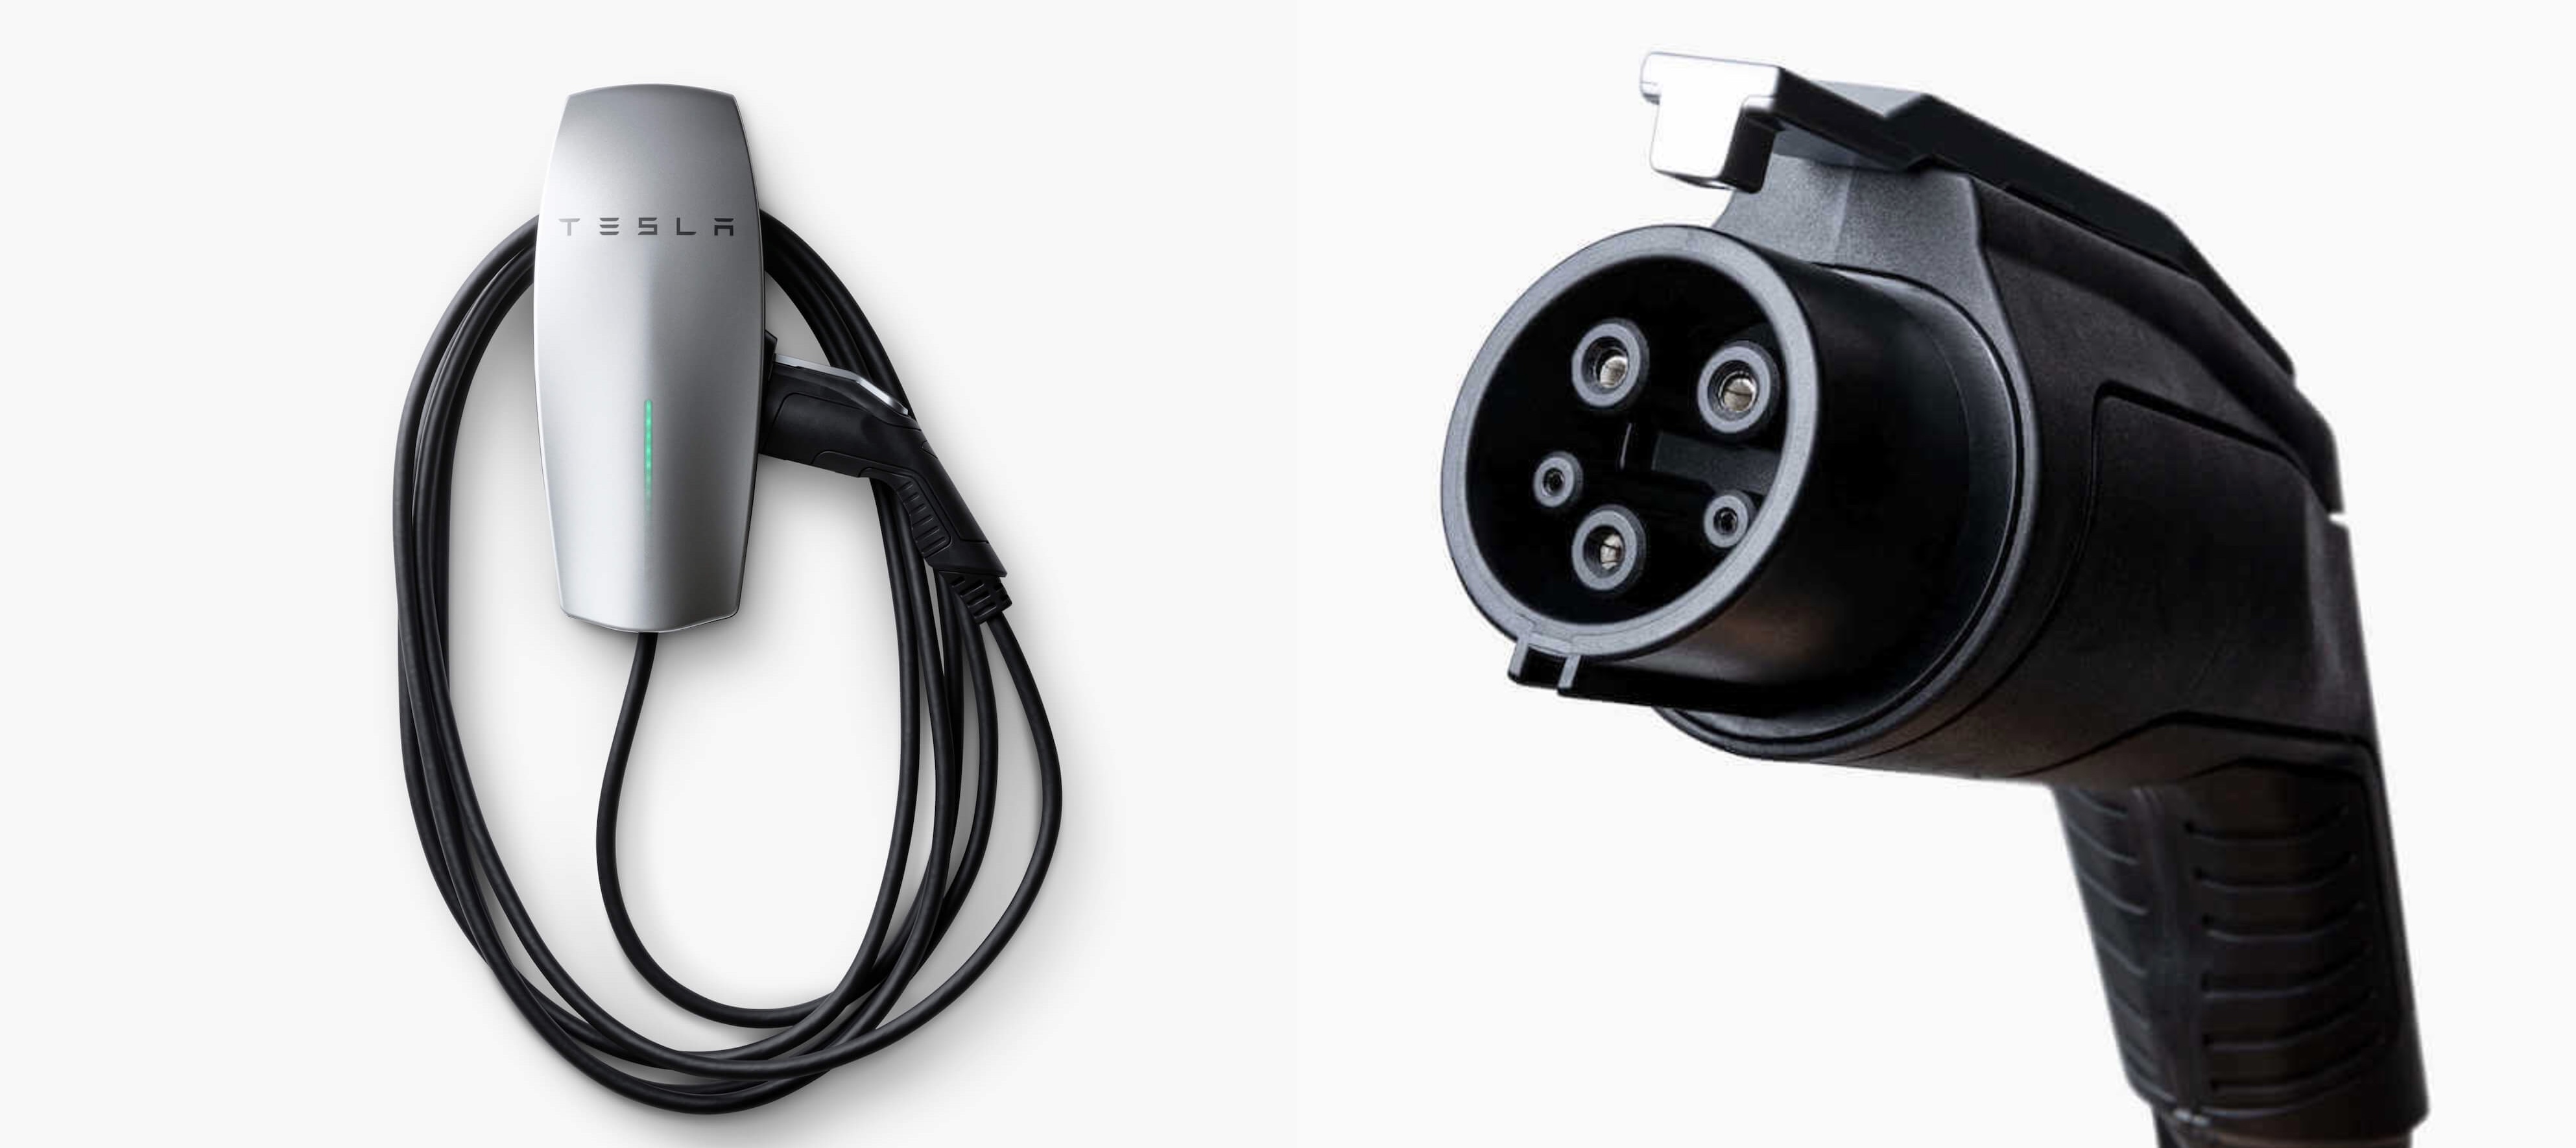 EVCARS Tesla Charging Adapter Black & Ev Charger Holder Type 1 Plug and Cable Holder 